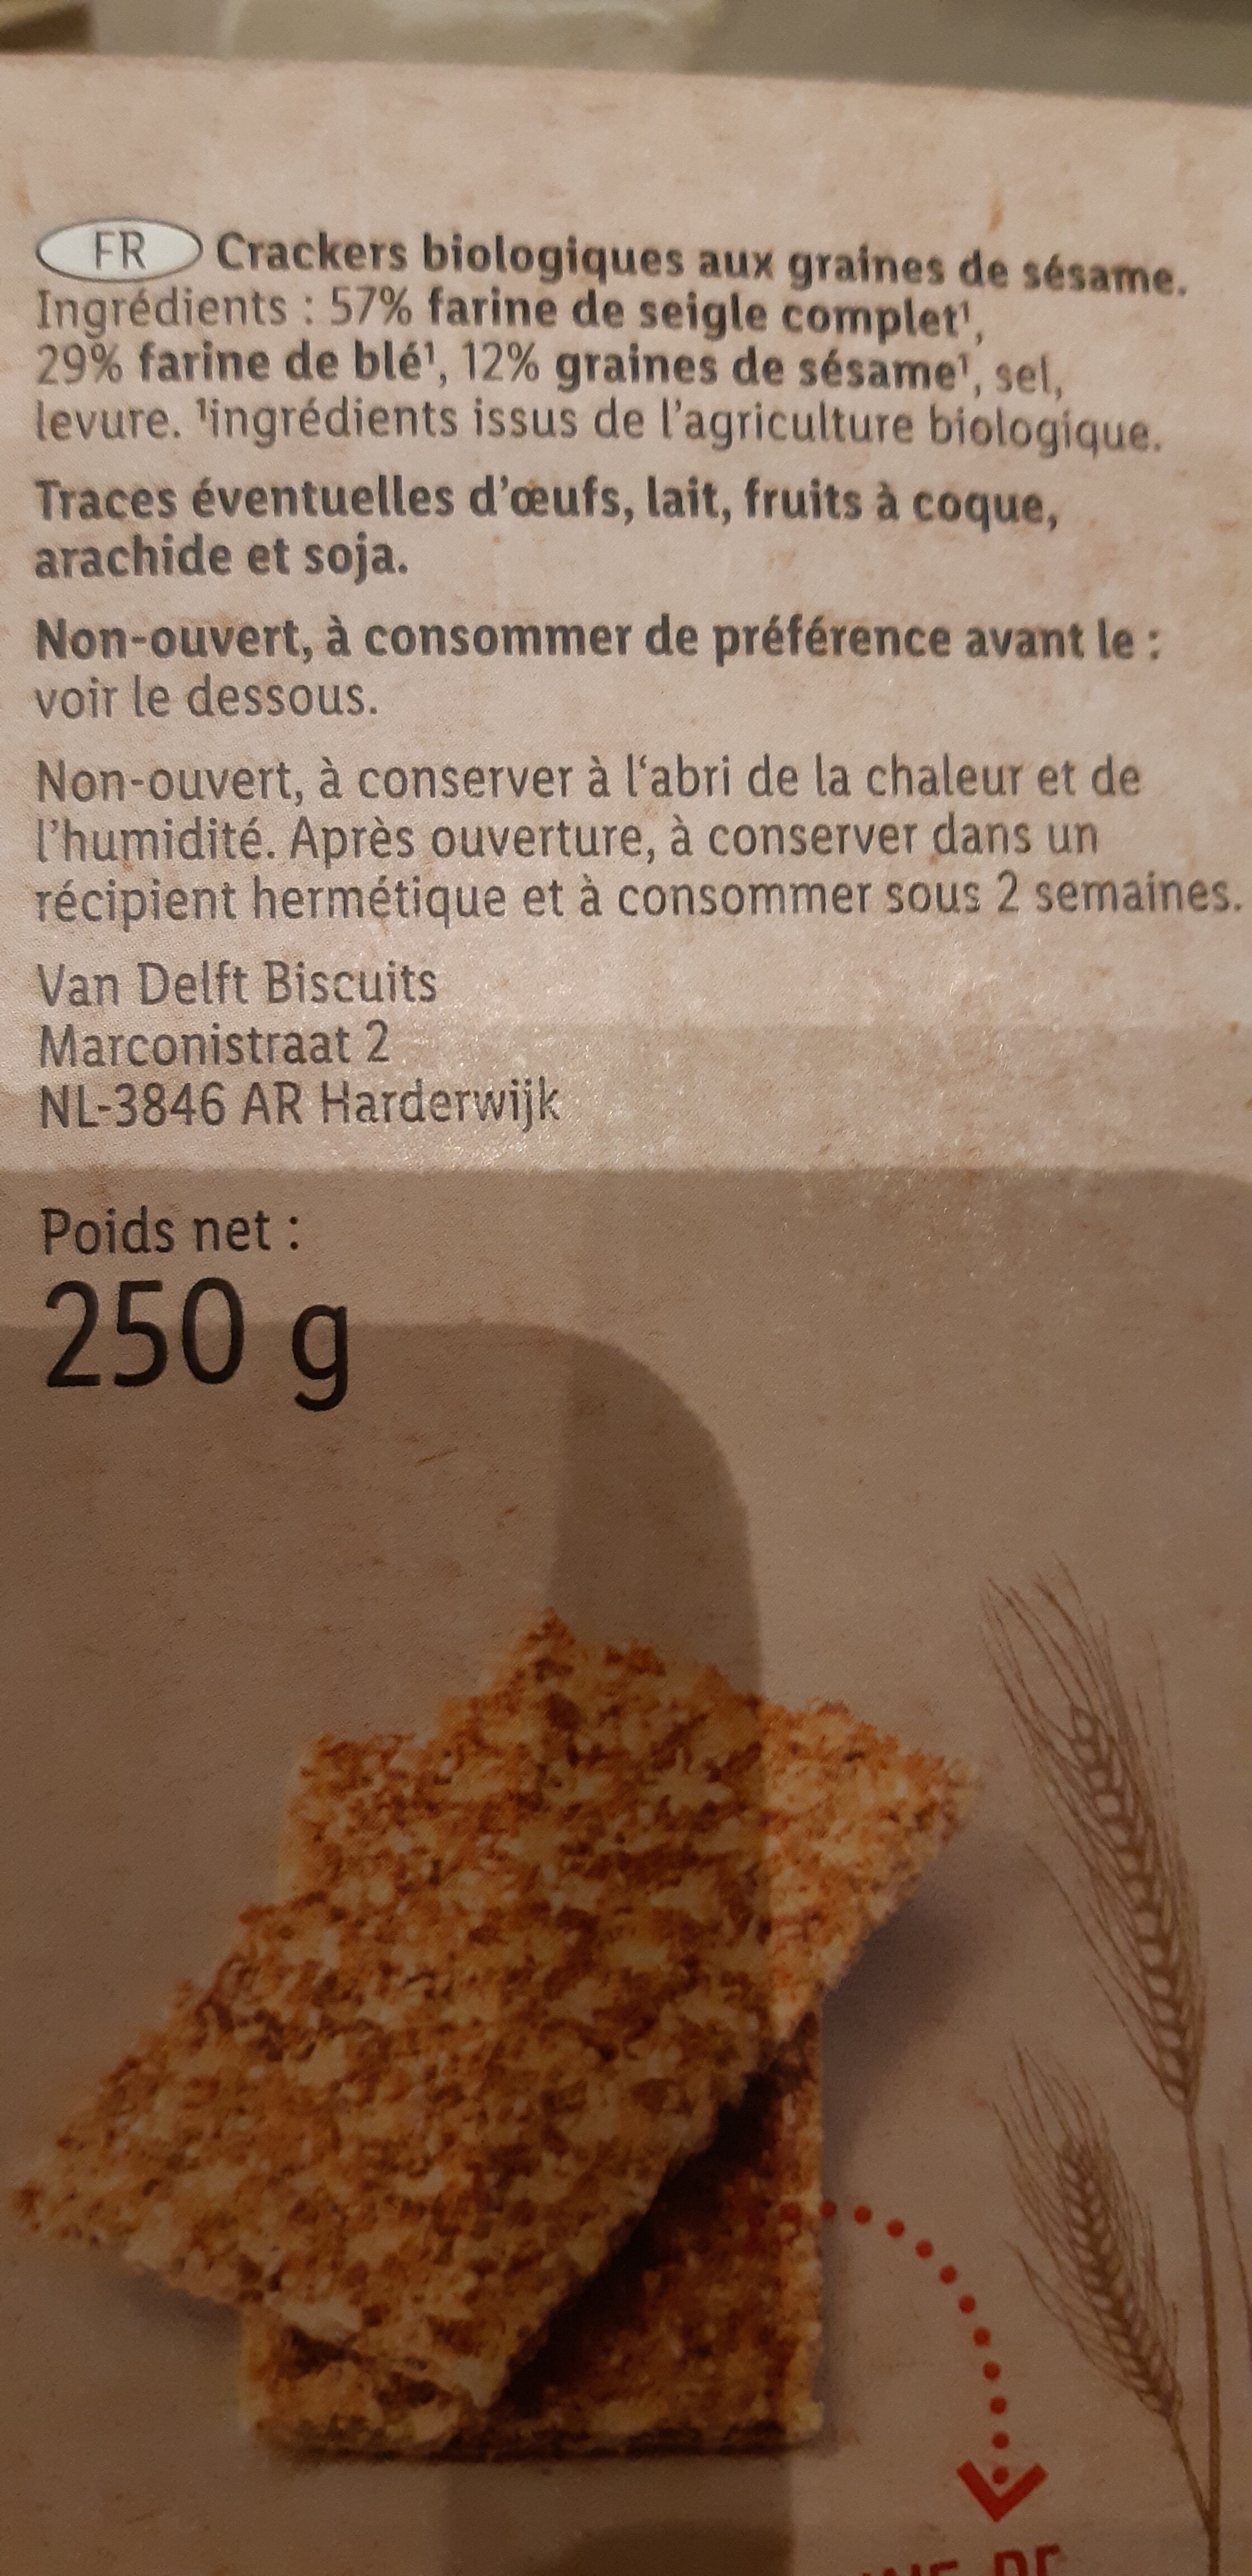 Crackers sesame - Ingredientes - fr